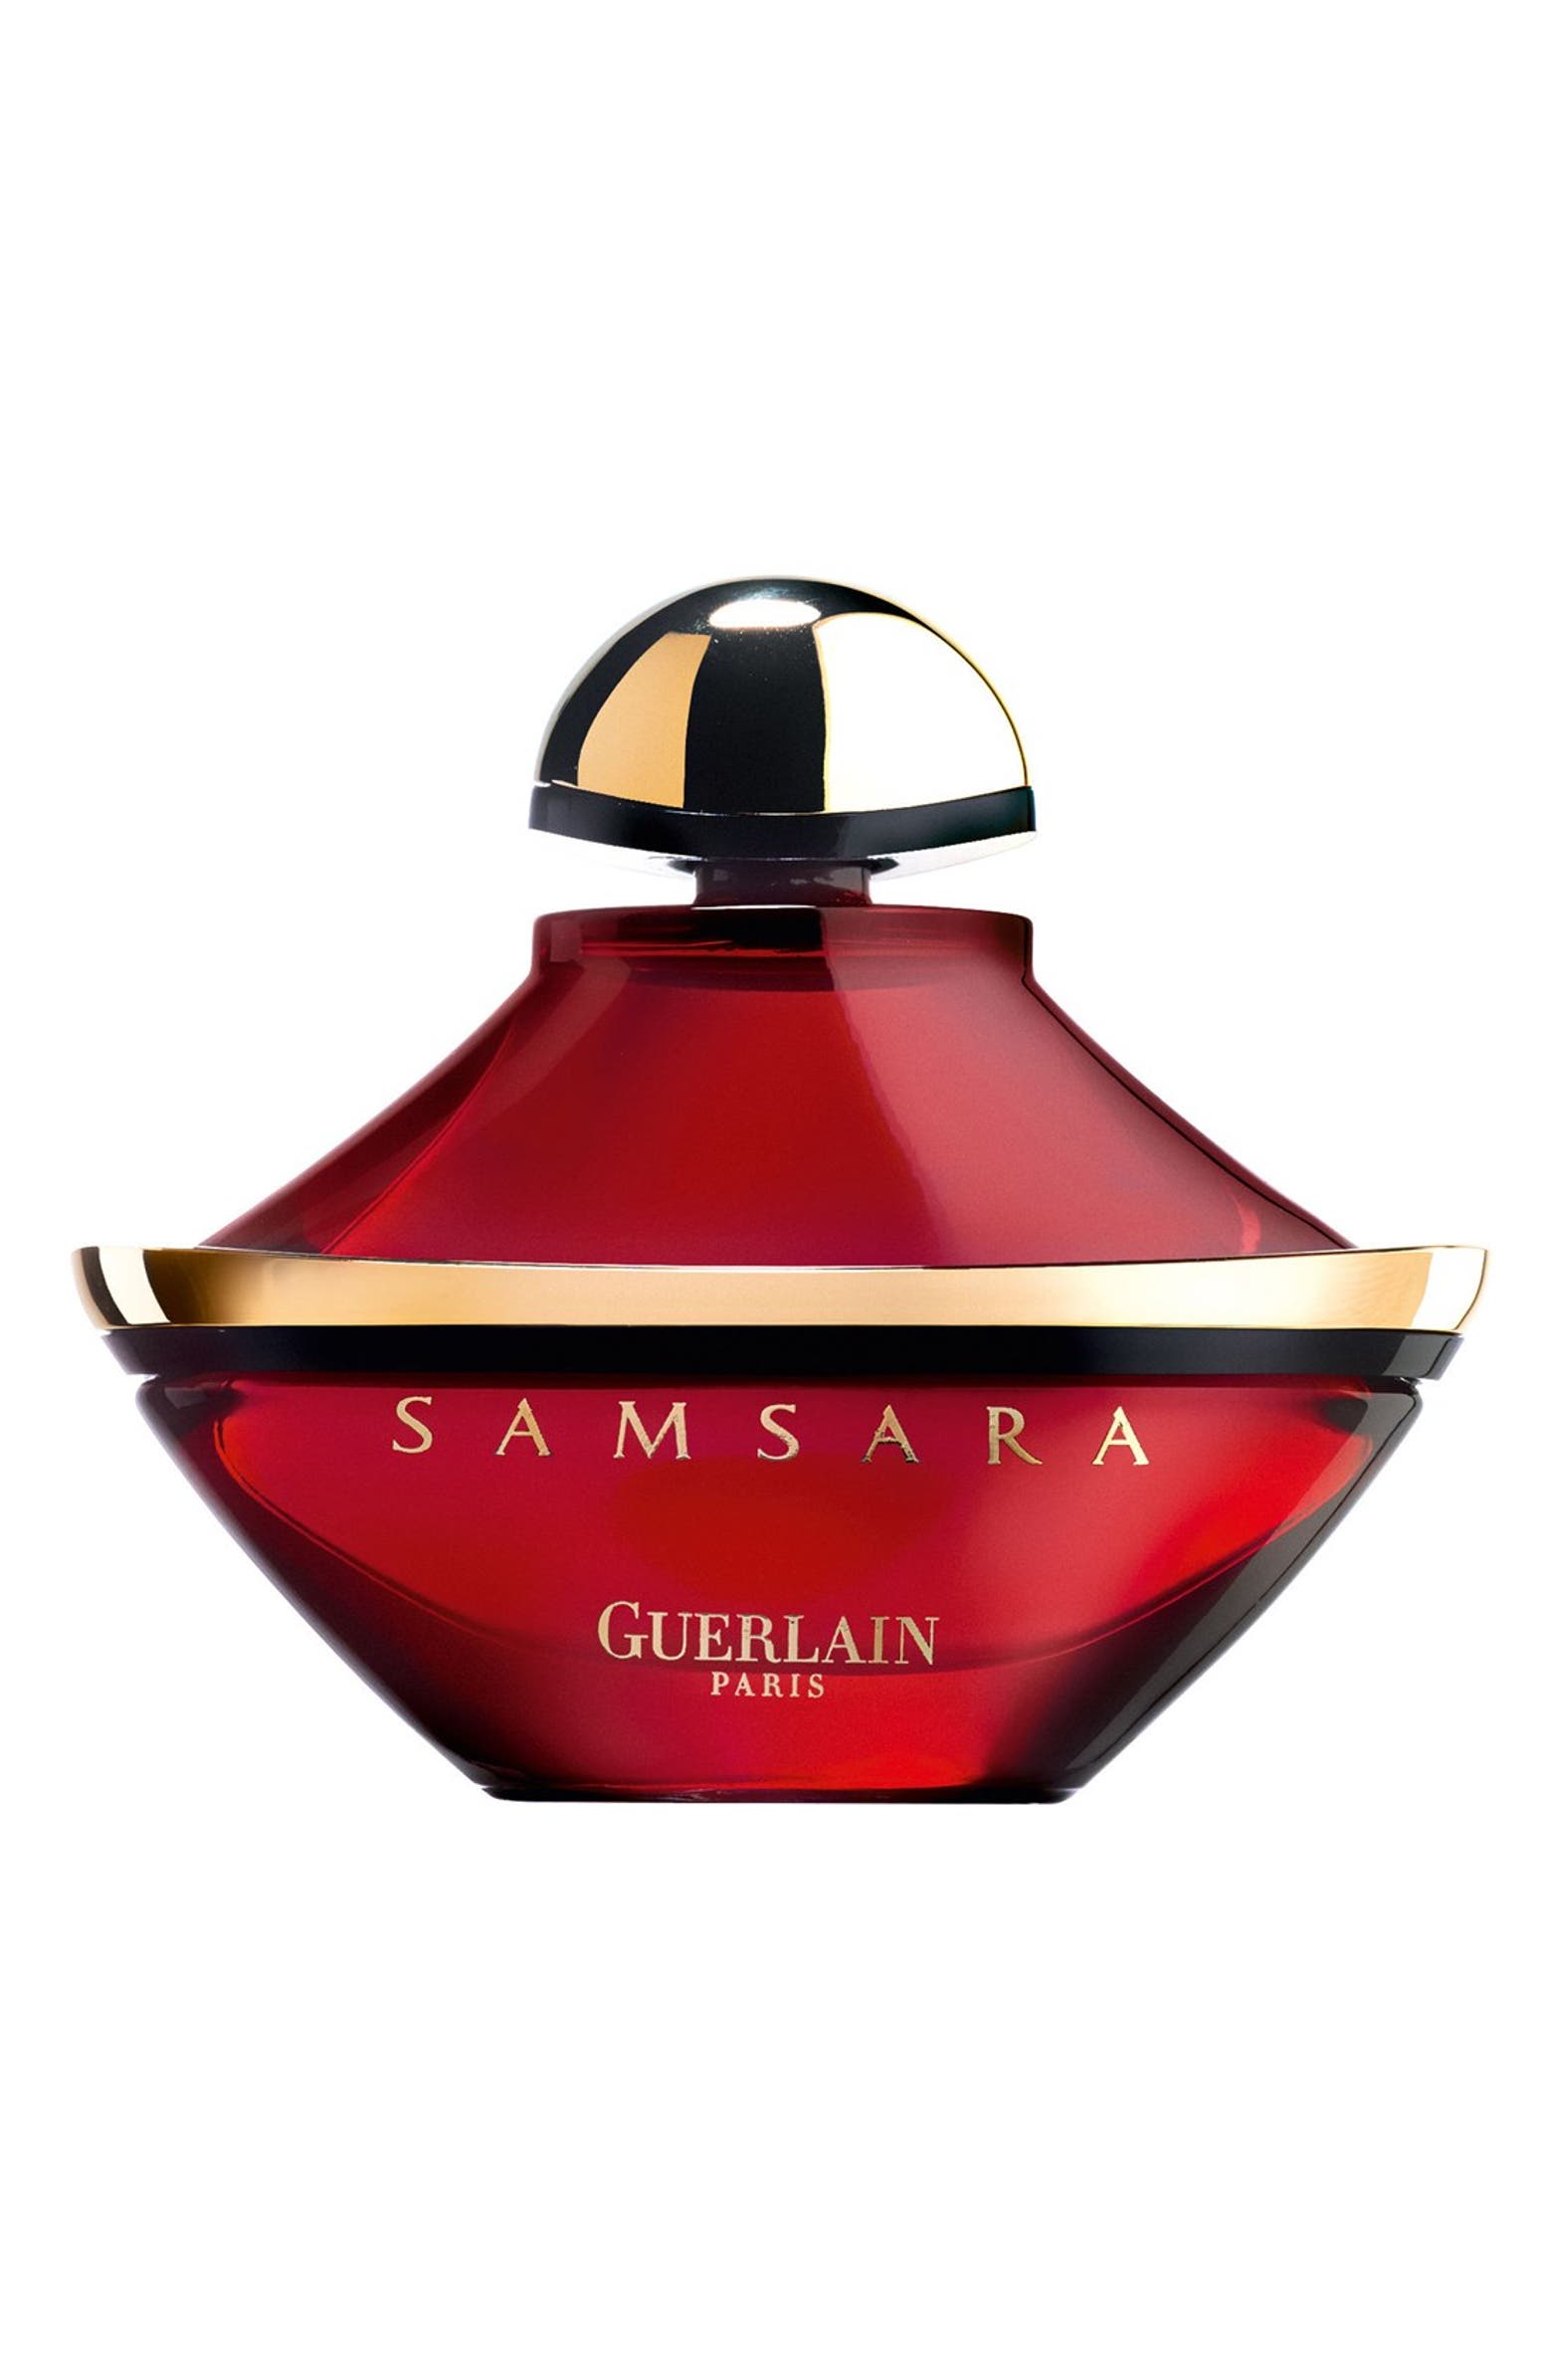 samsara perfume travel size